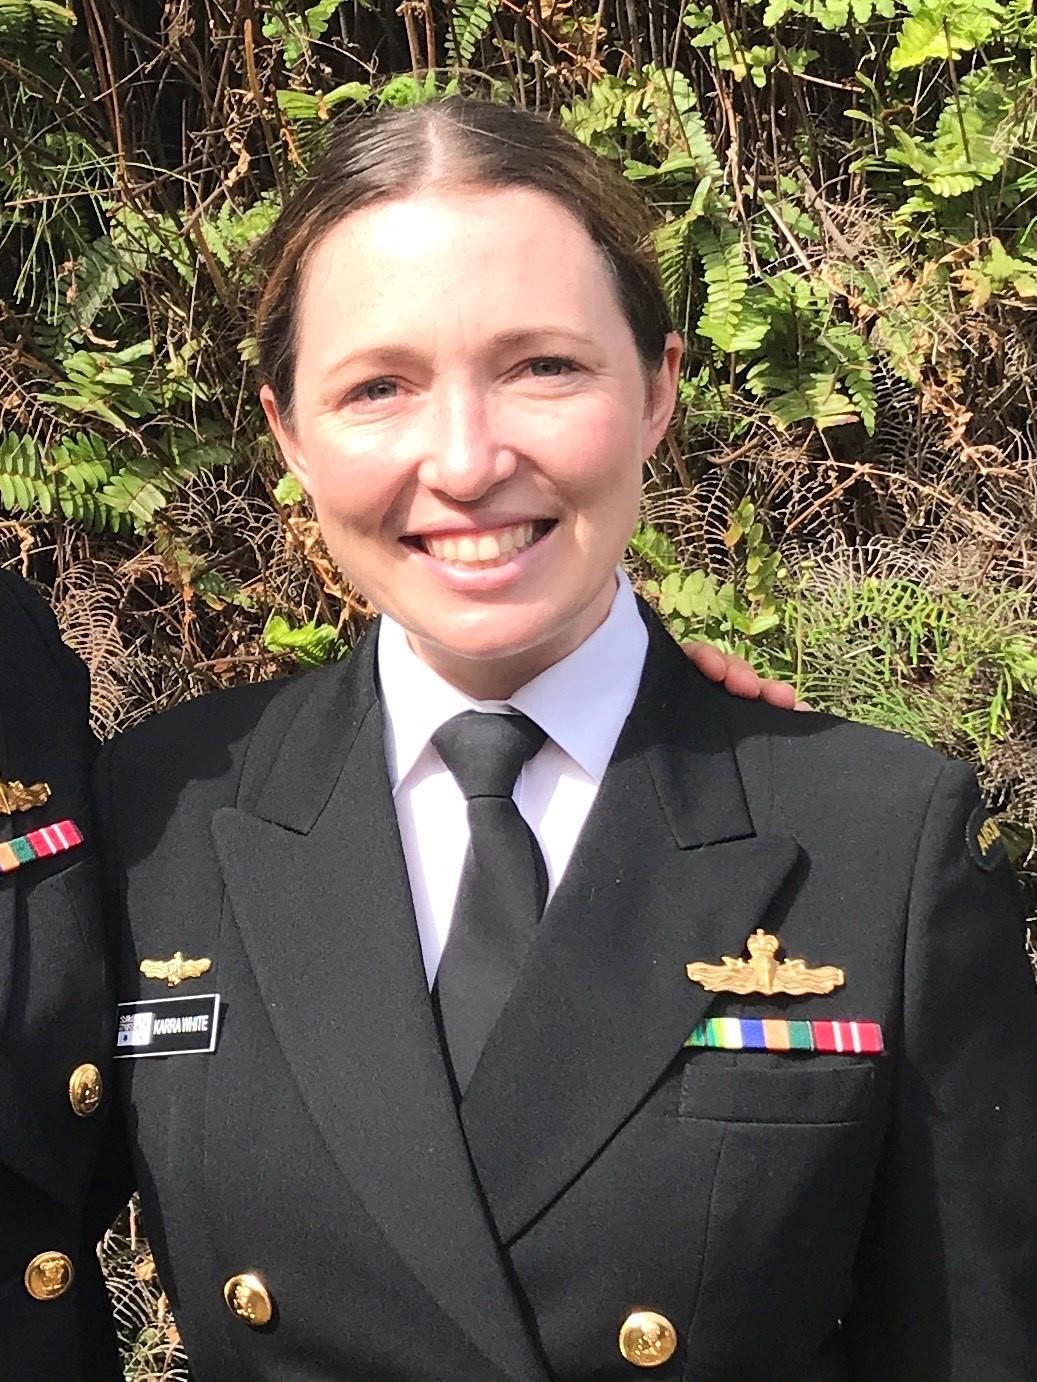 Lieutenant Commander Karra White